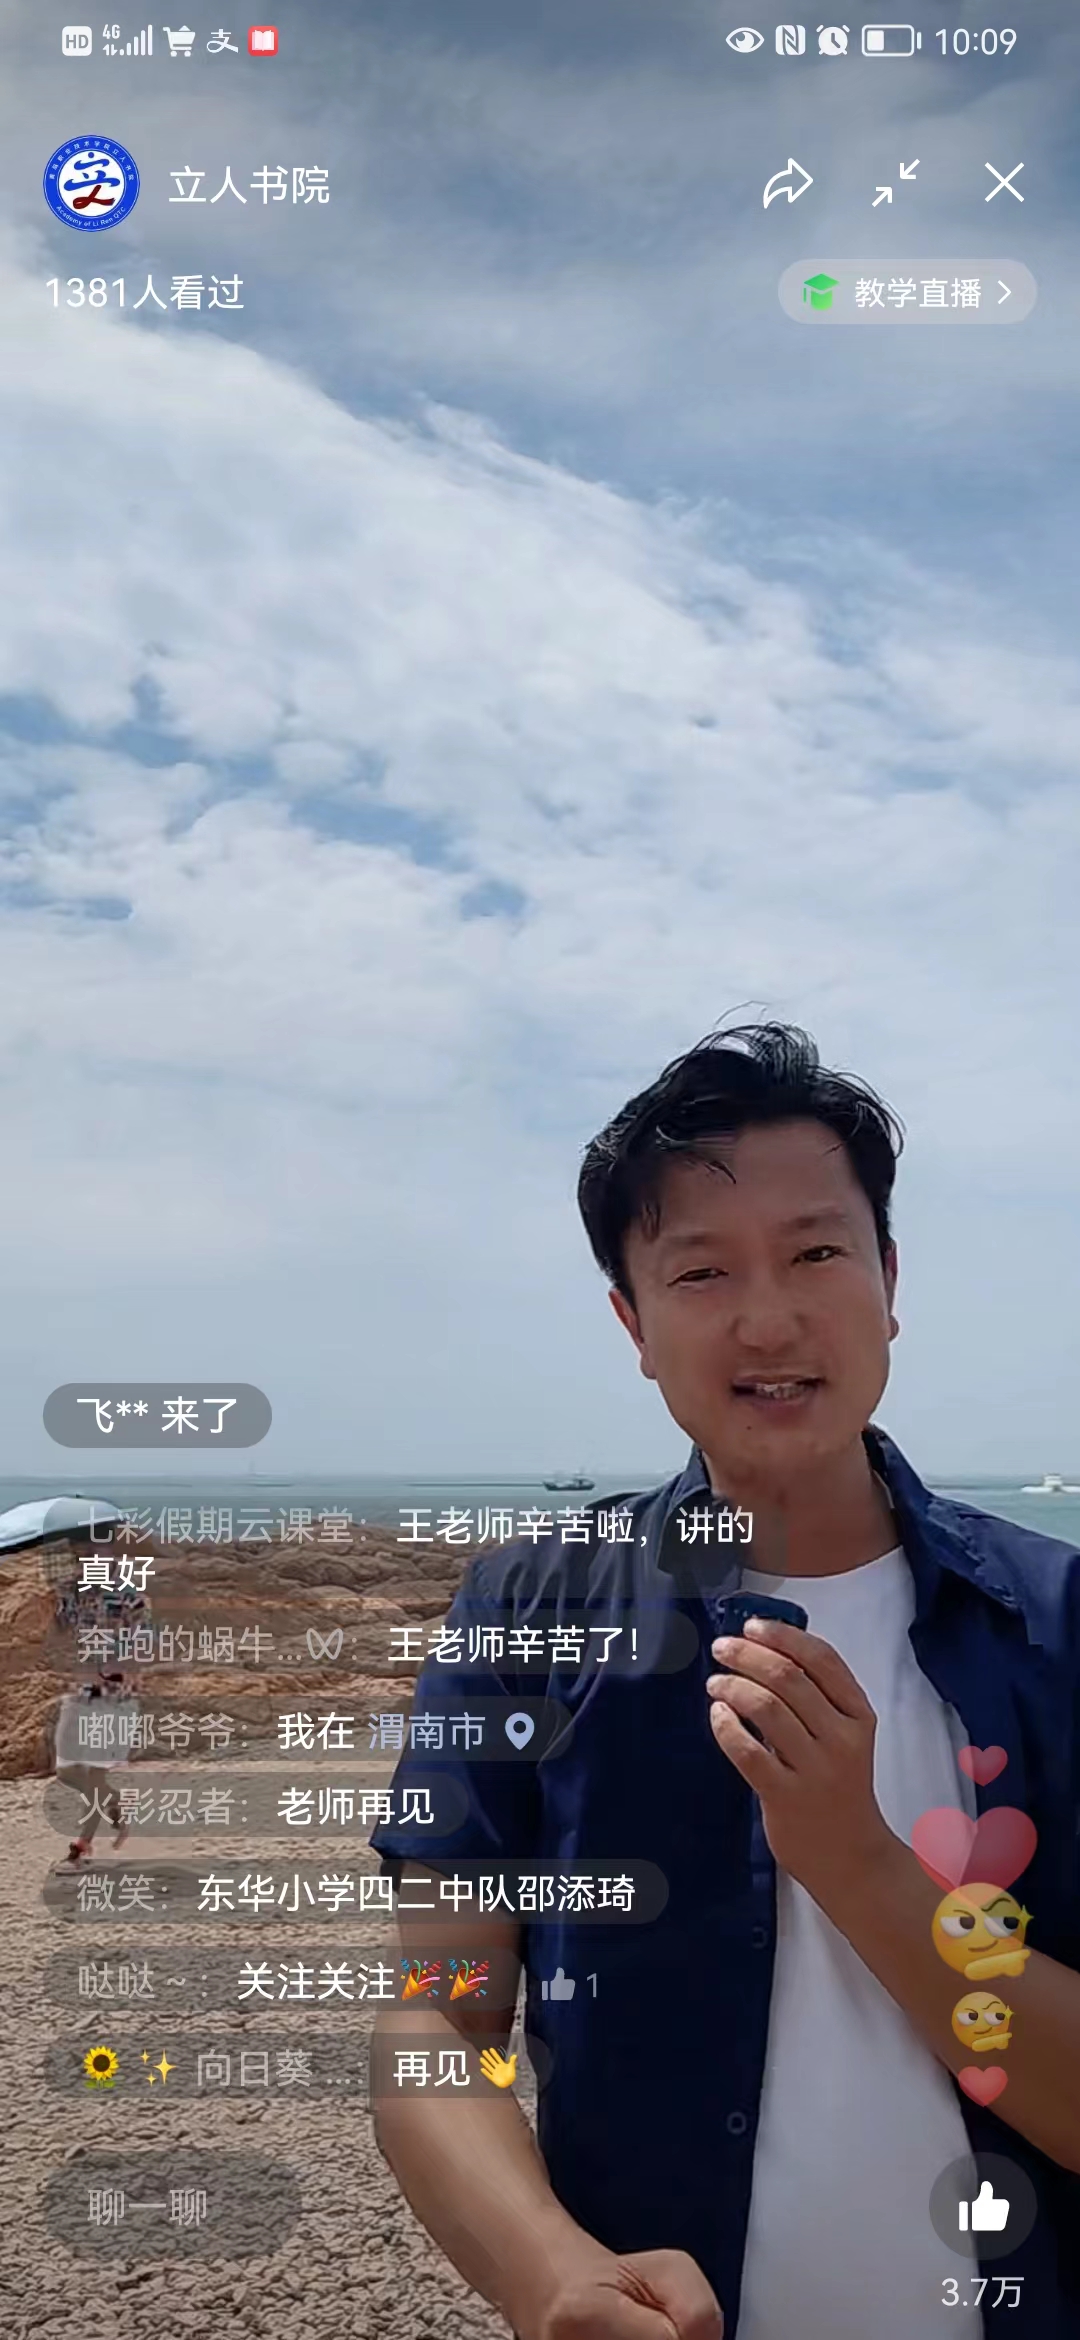 2.立人书院导师、青岛文史宣传人王云峰在海滨直播《海洋的过去与未来》.jpg